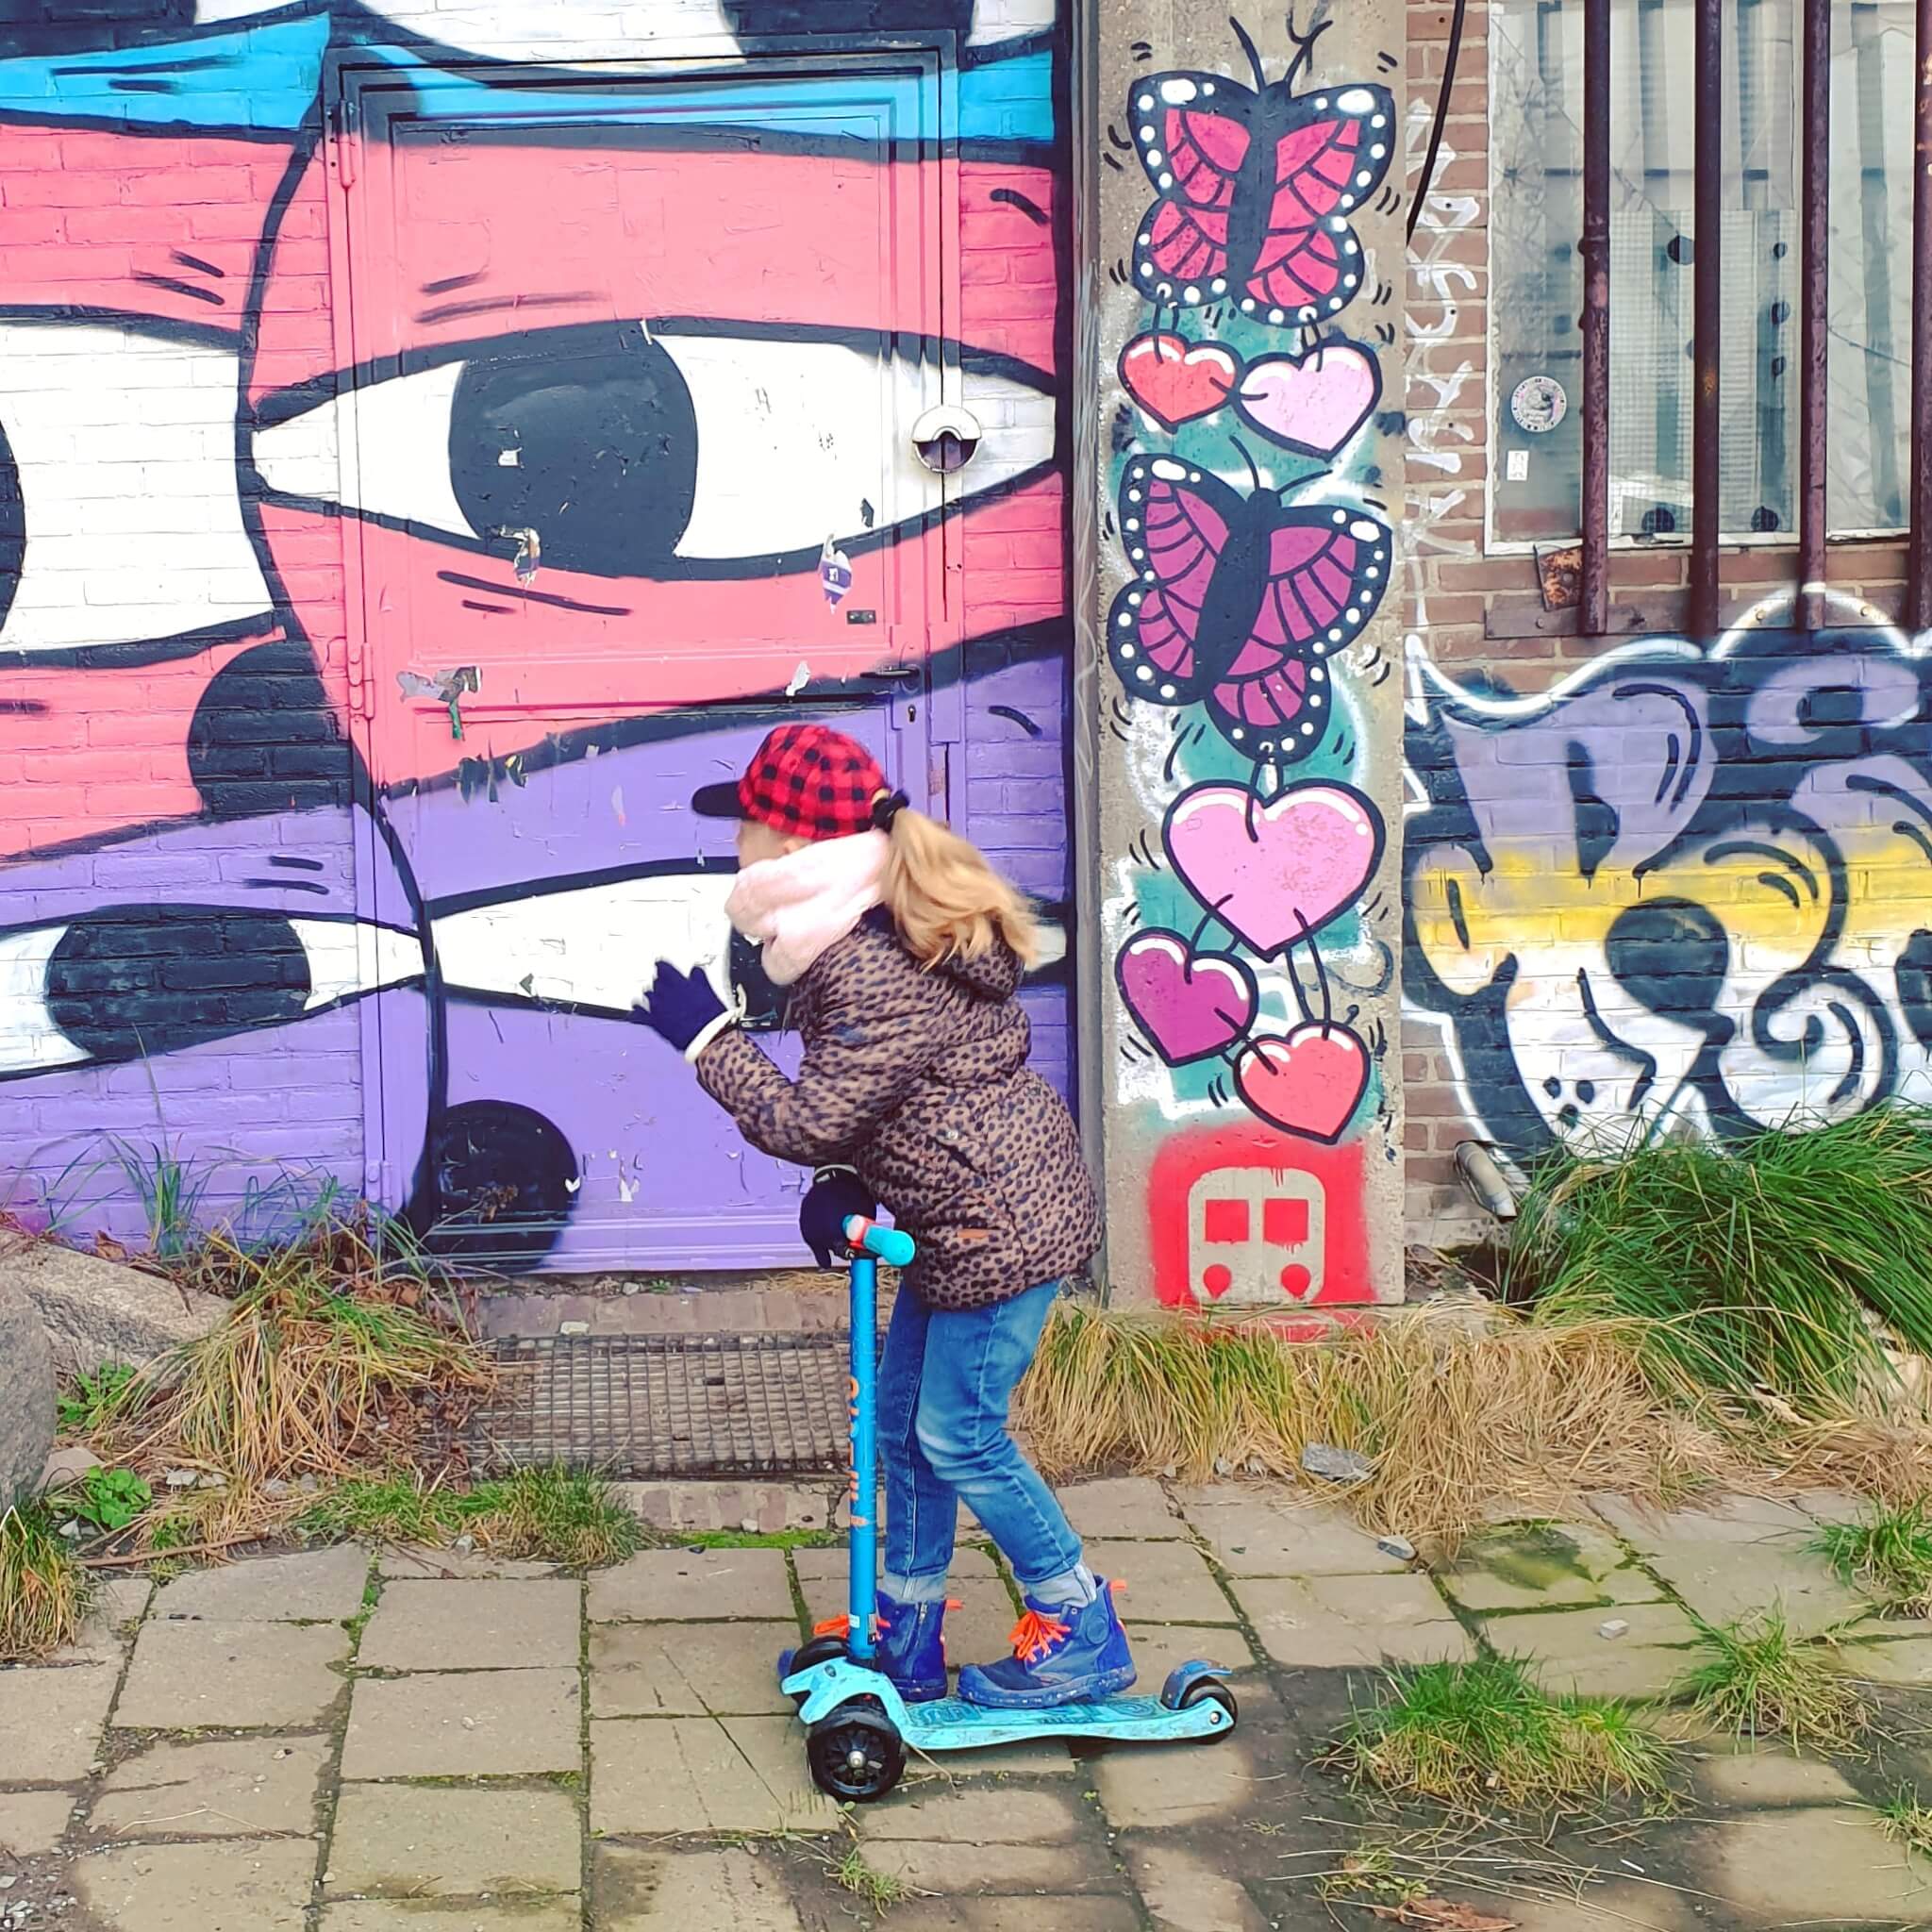 De leukste street art routes voor kinderen en tieners. Wij zijn gek op street art routes. Het is een leuke creatieve manier om te wandelen met kids. En er komen steeds meer leuke street art routes bij. In dit artikel verzamelen we de leukste street art routes voor kinderen en tieners. Zoals hier in Amsterdam.